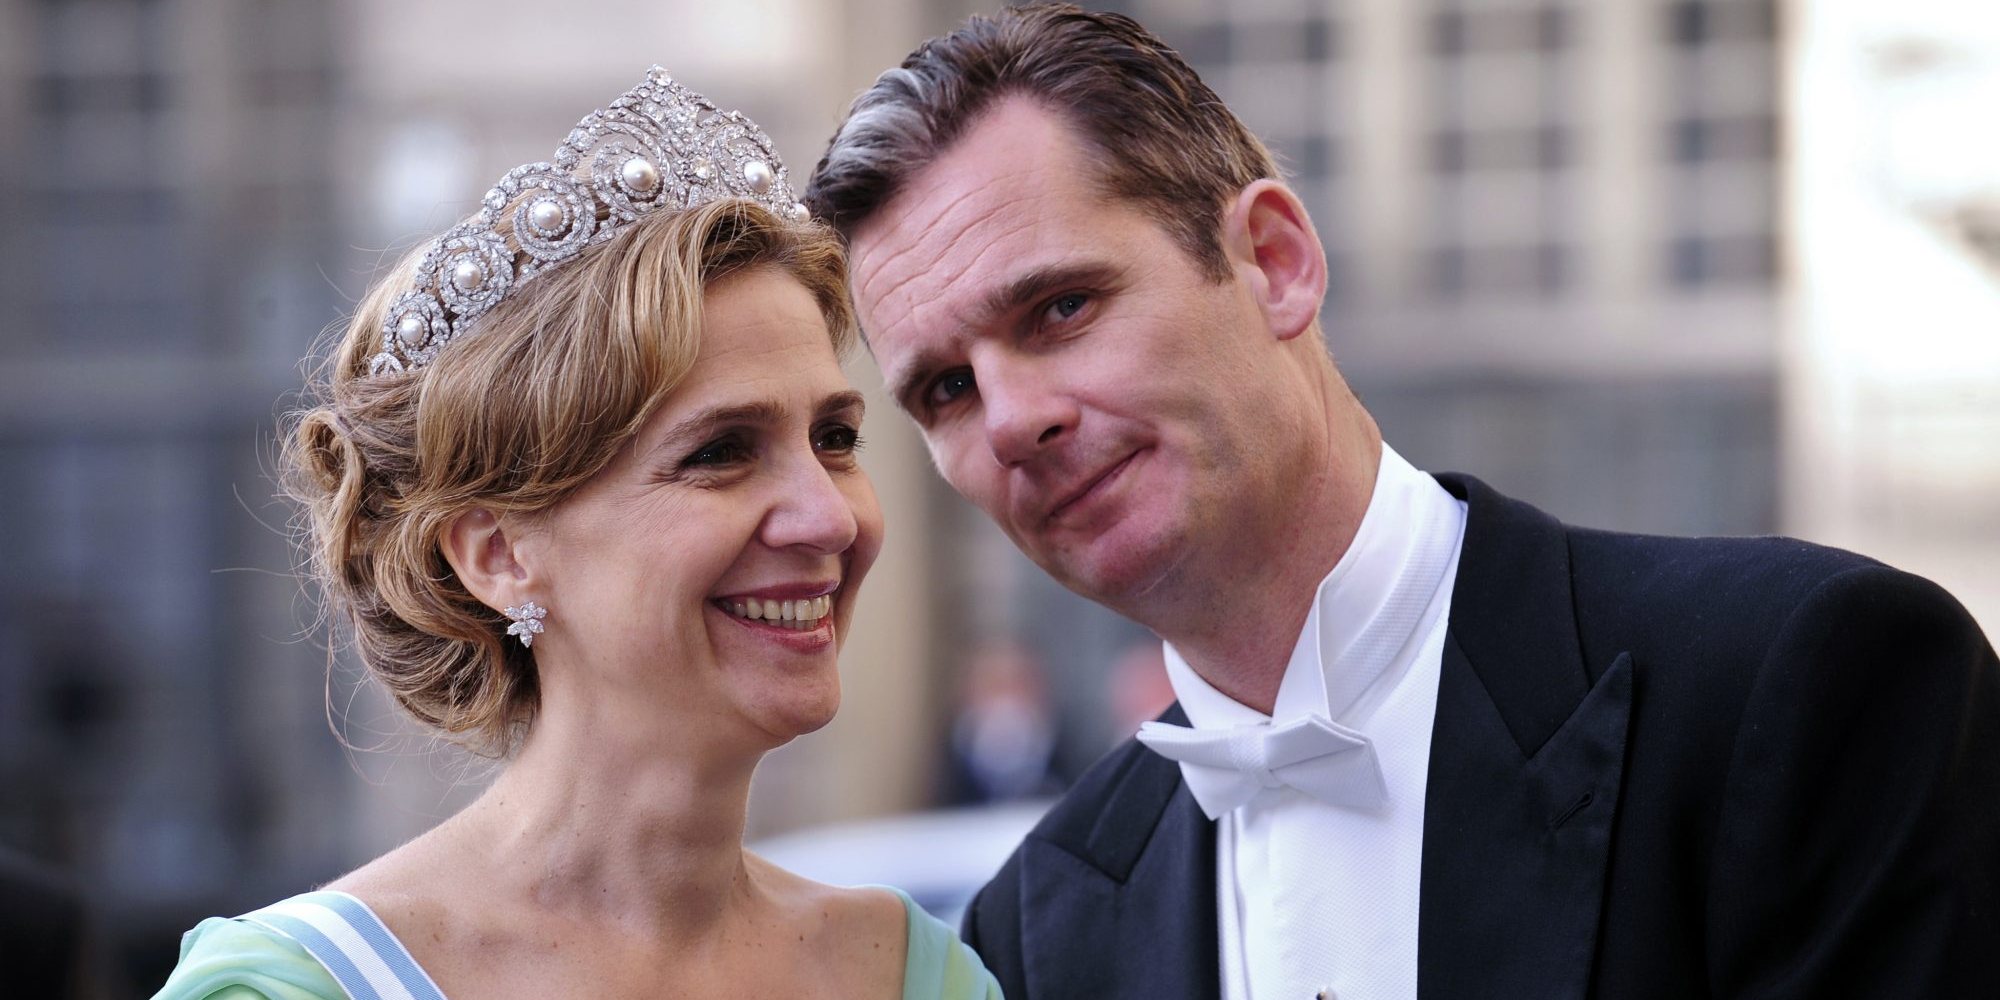 A infanta Cristina de Espanha e Iñaki Urdangarin casaram-se a 4 de outubro de 1997 e tornaram-se duques de Palma de Mallorca, título que lhes viria a ser retirado na sequência de um caso de corrupção